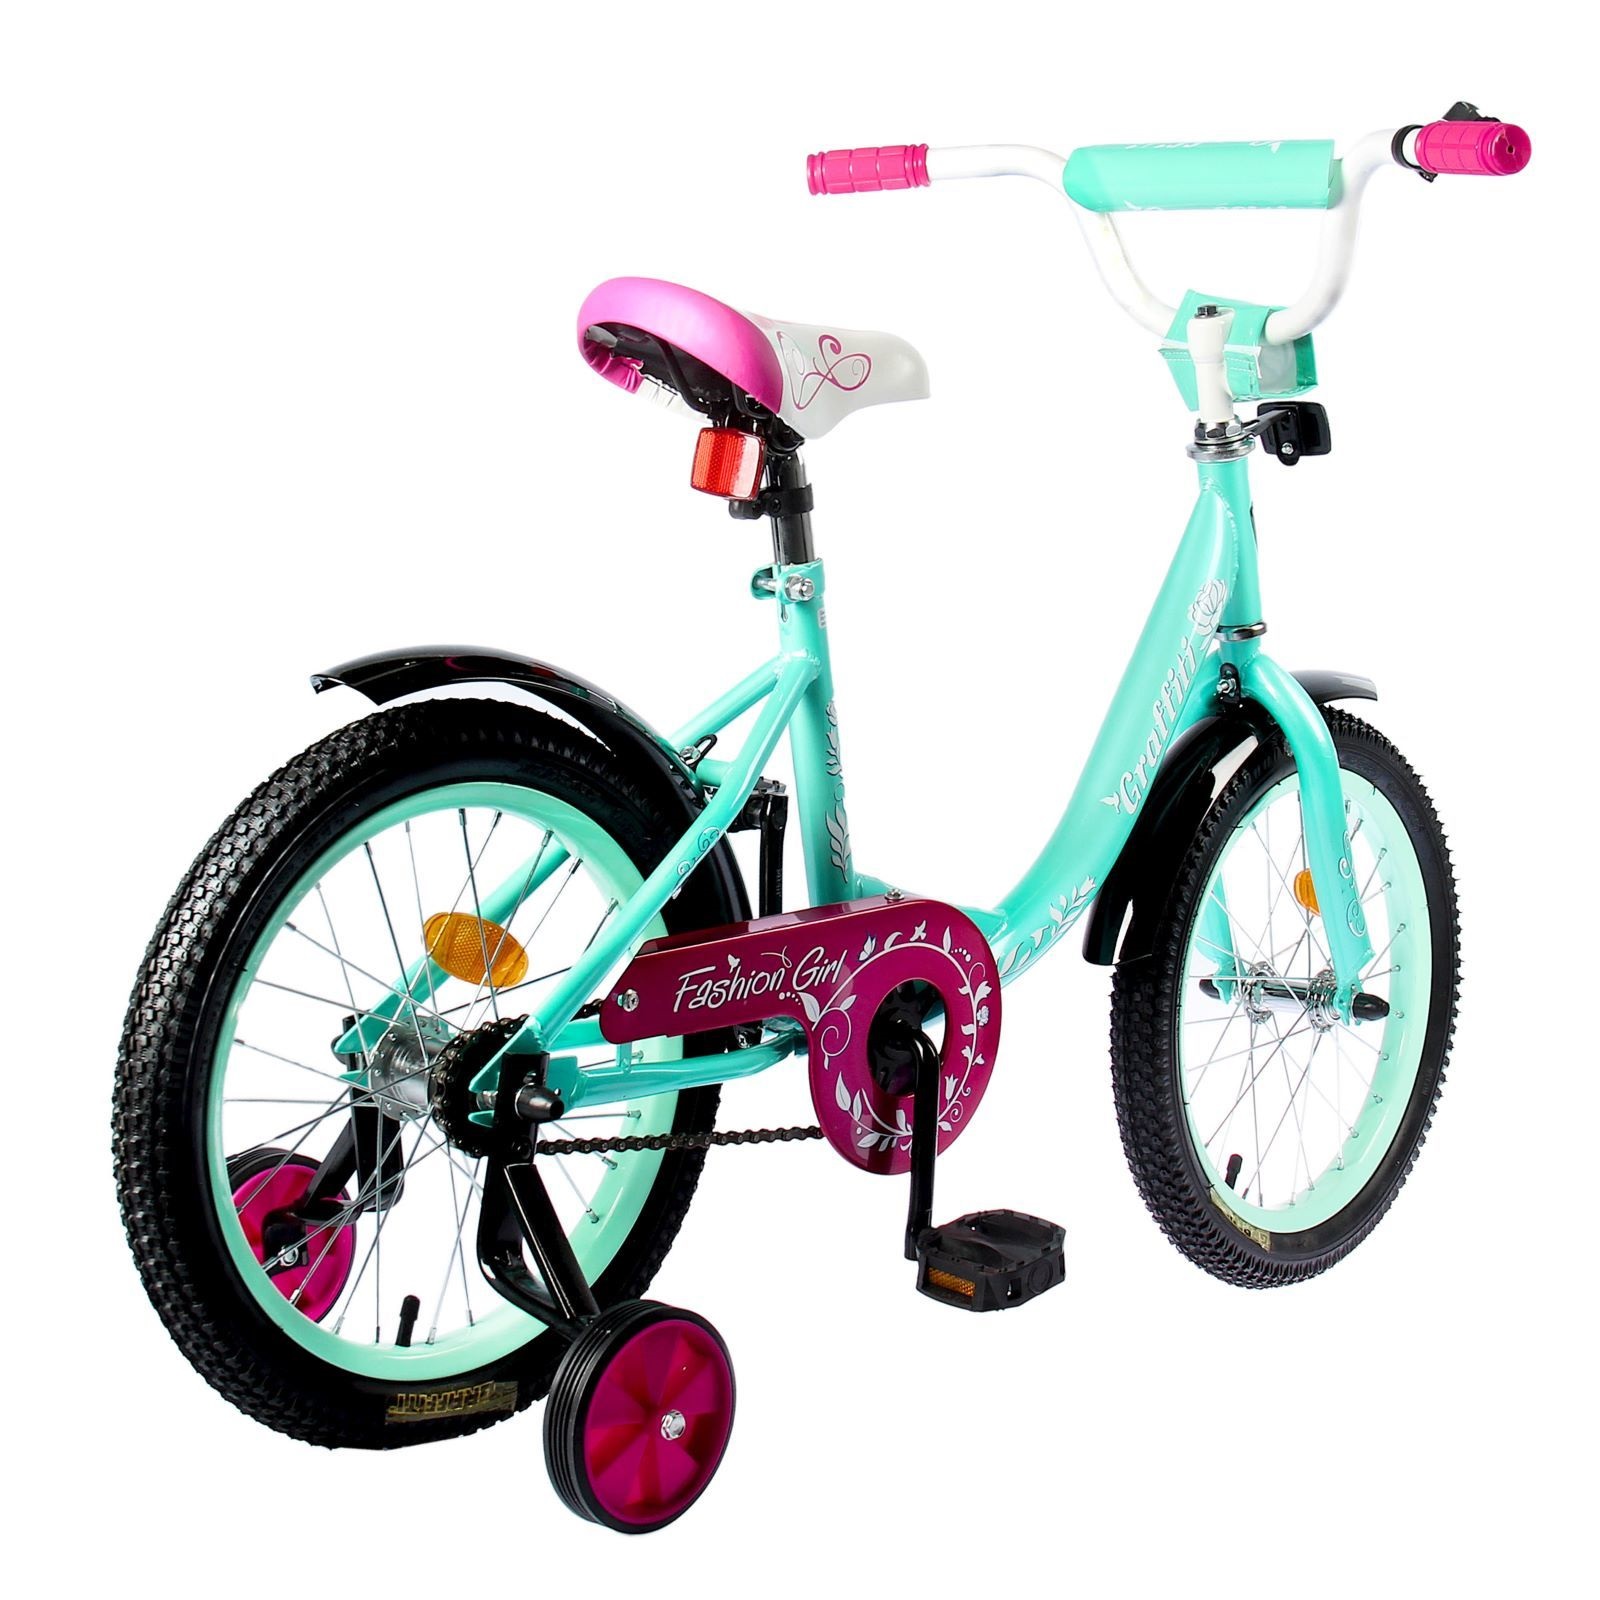 Какой велосипед купить ребенку 8 лет. Велосипед Graffiti Fashion girl. Велосипед для девочки. Детский велосипед для девочки. Велосипед детский двухколесный.